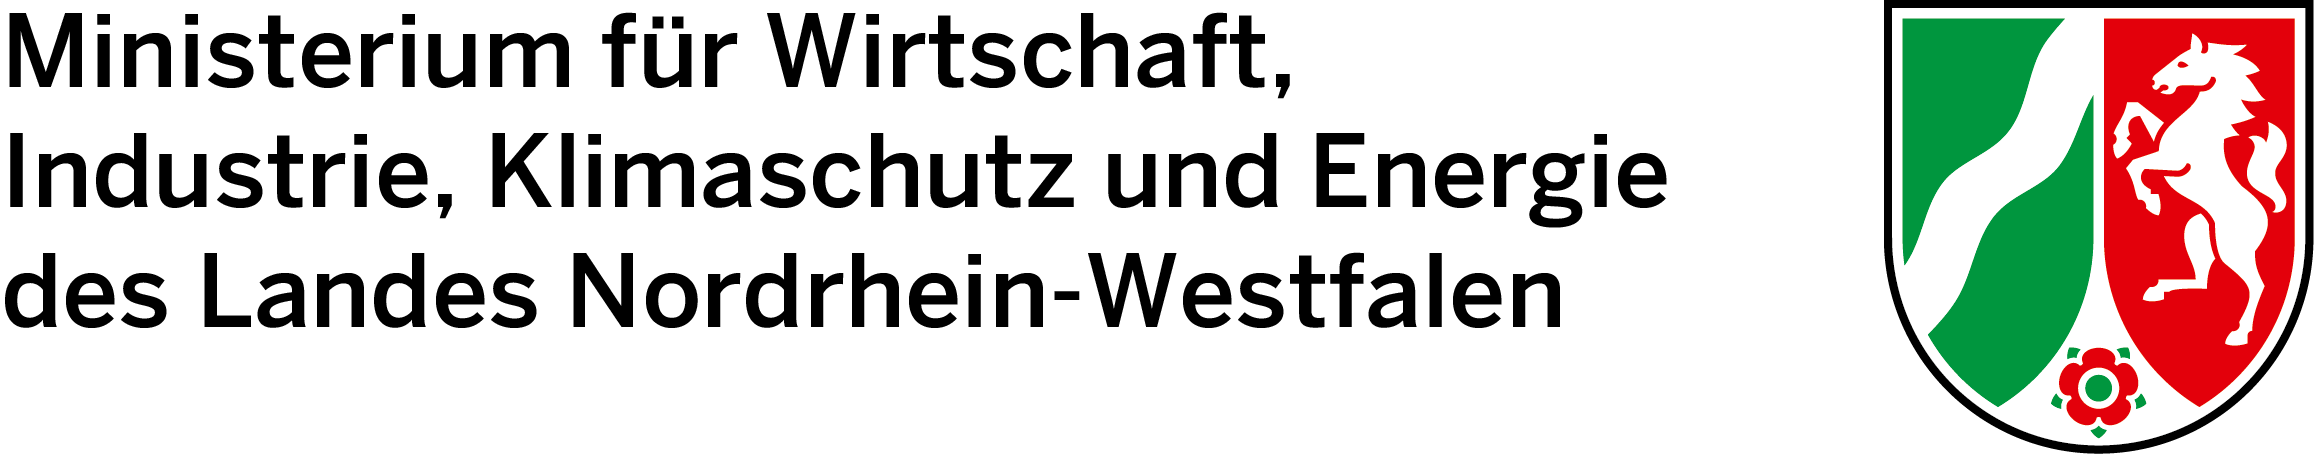 Logo Ministerstwa Gospodarki, Przemysłu, Ochrony Klimatu i Energii Nadrenii Północnej-Westfalii